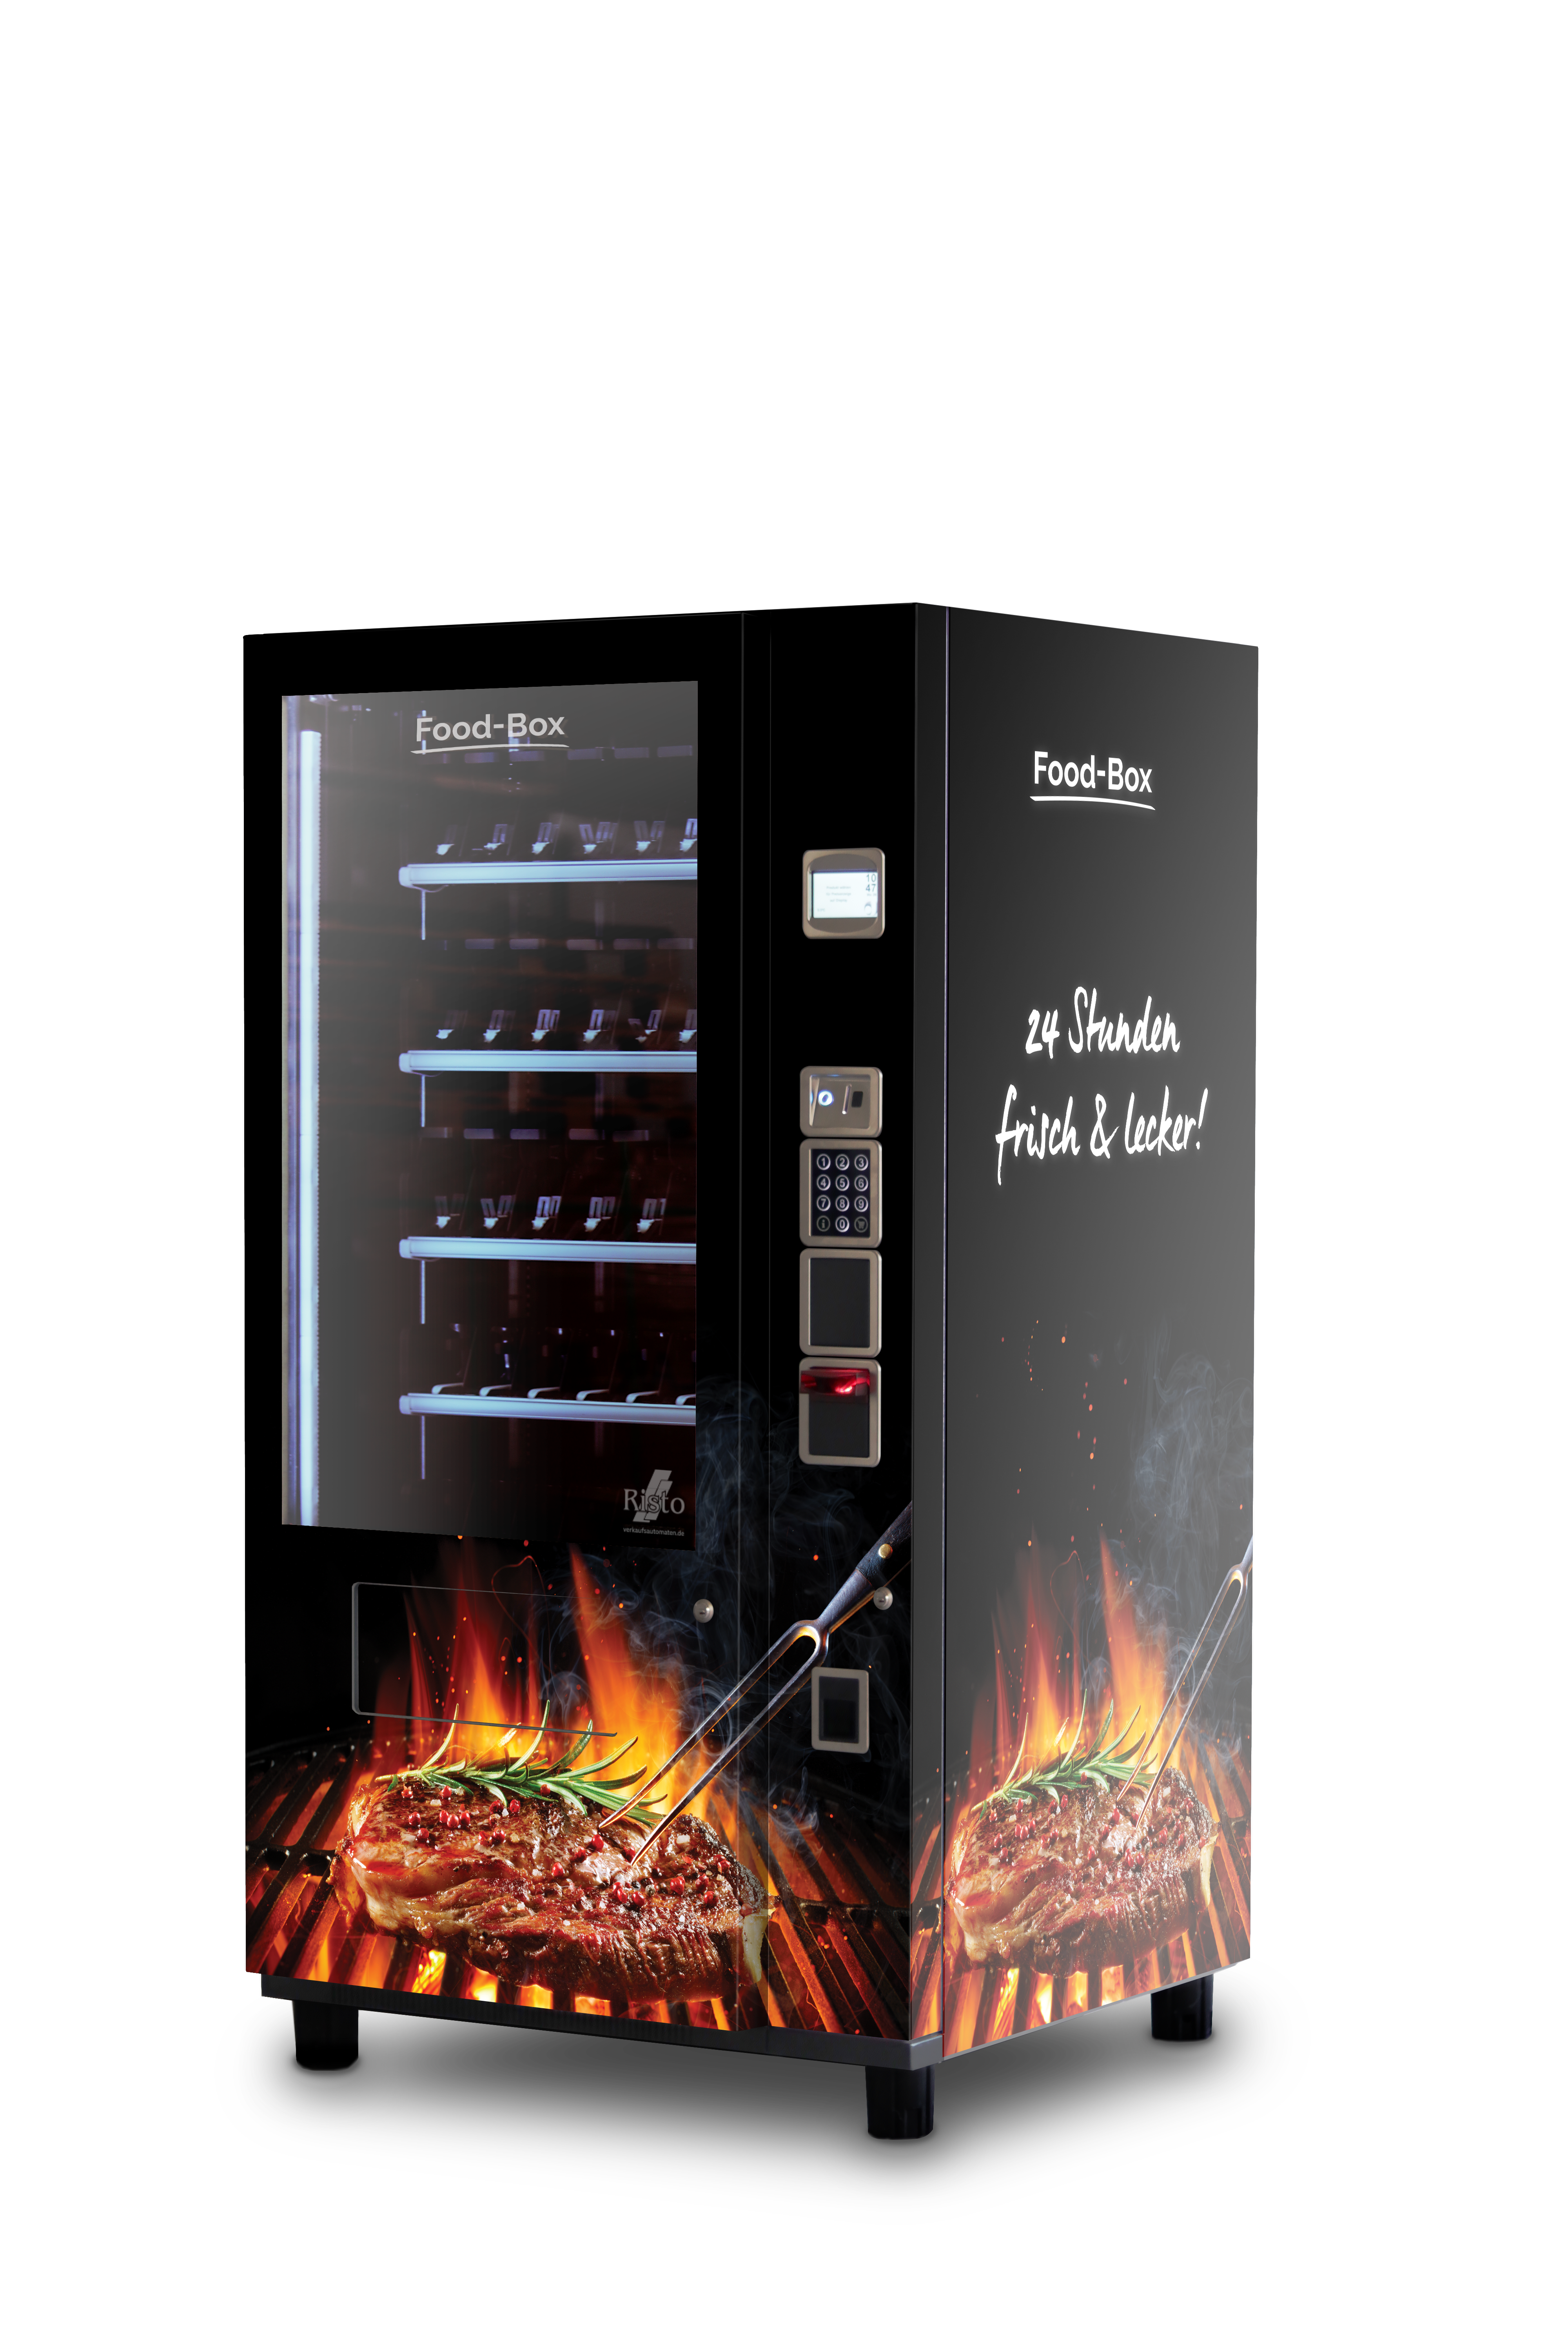 Verkaufsautomat für Fleisch Grillfleischautomat